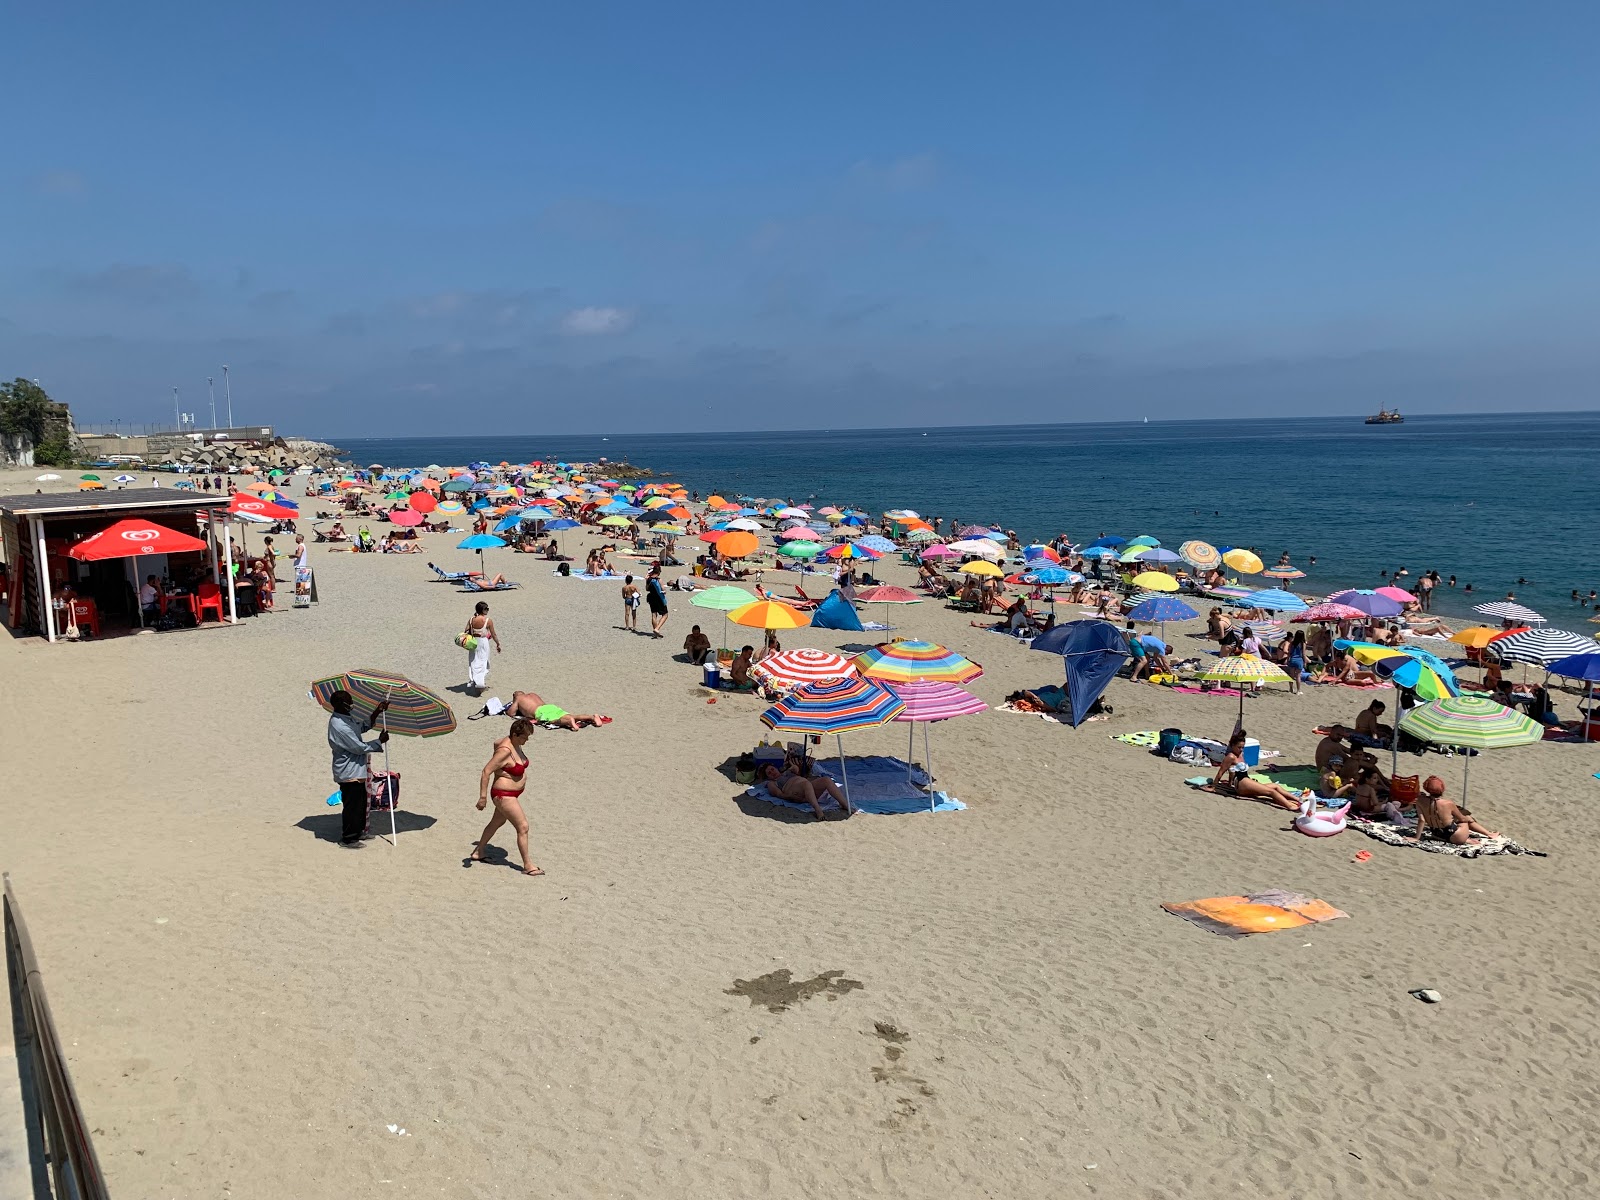 Spiaggia Libera del Prolungamento的照片 海滩度假区